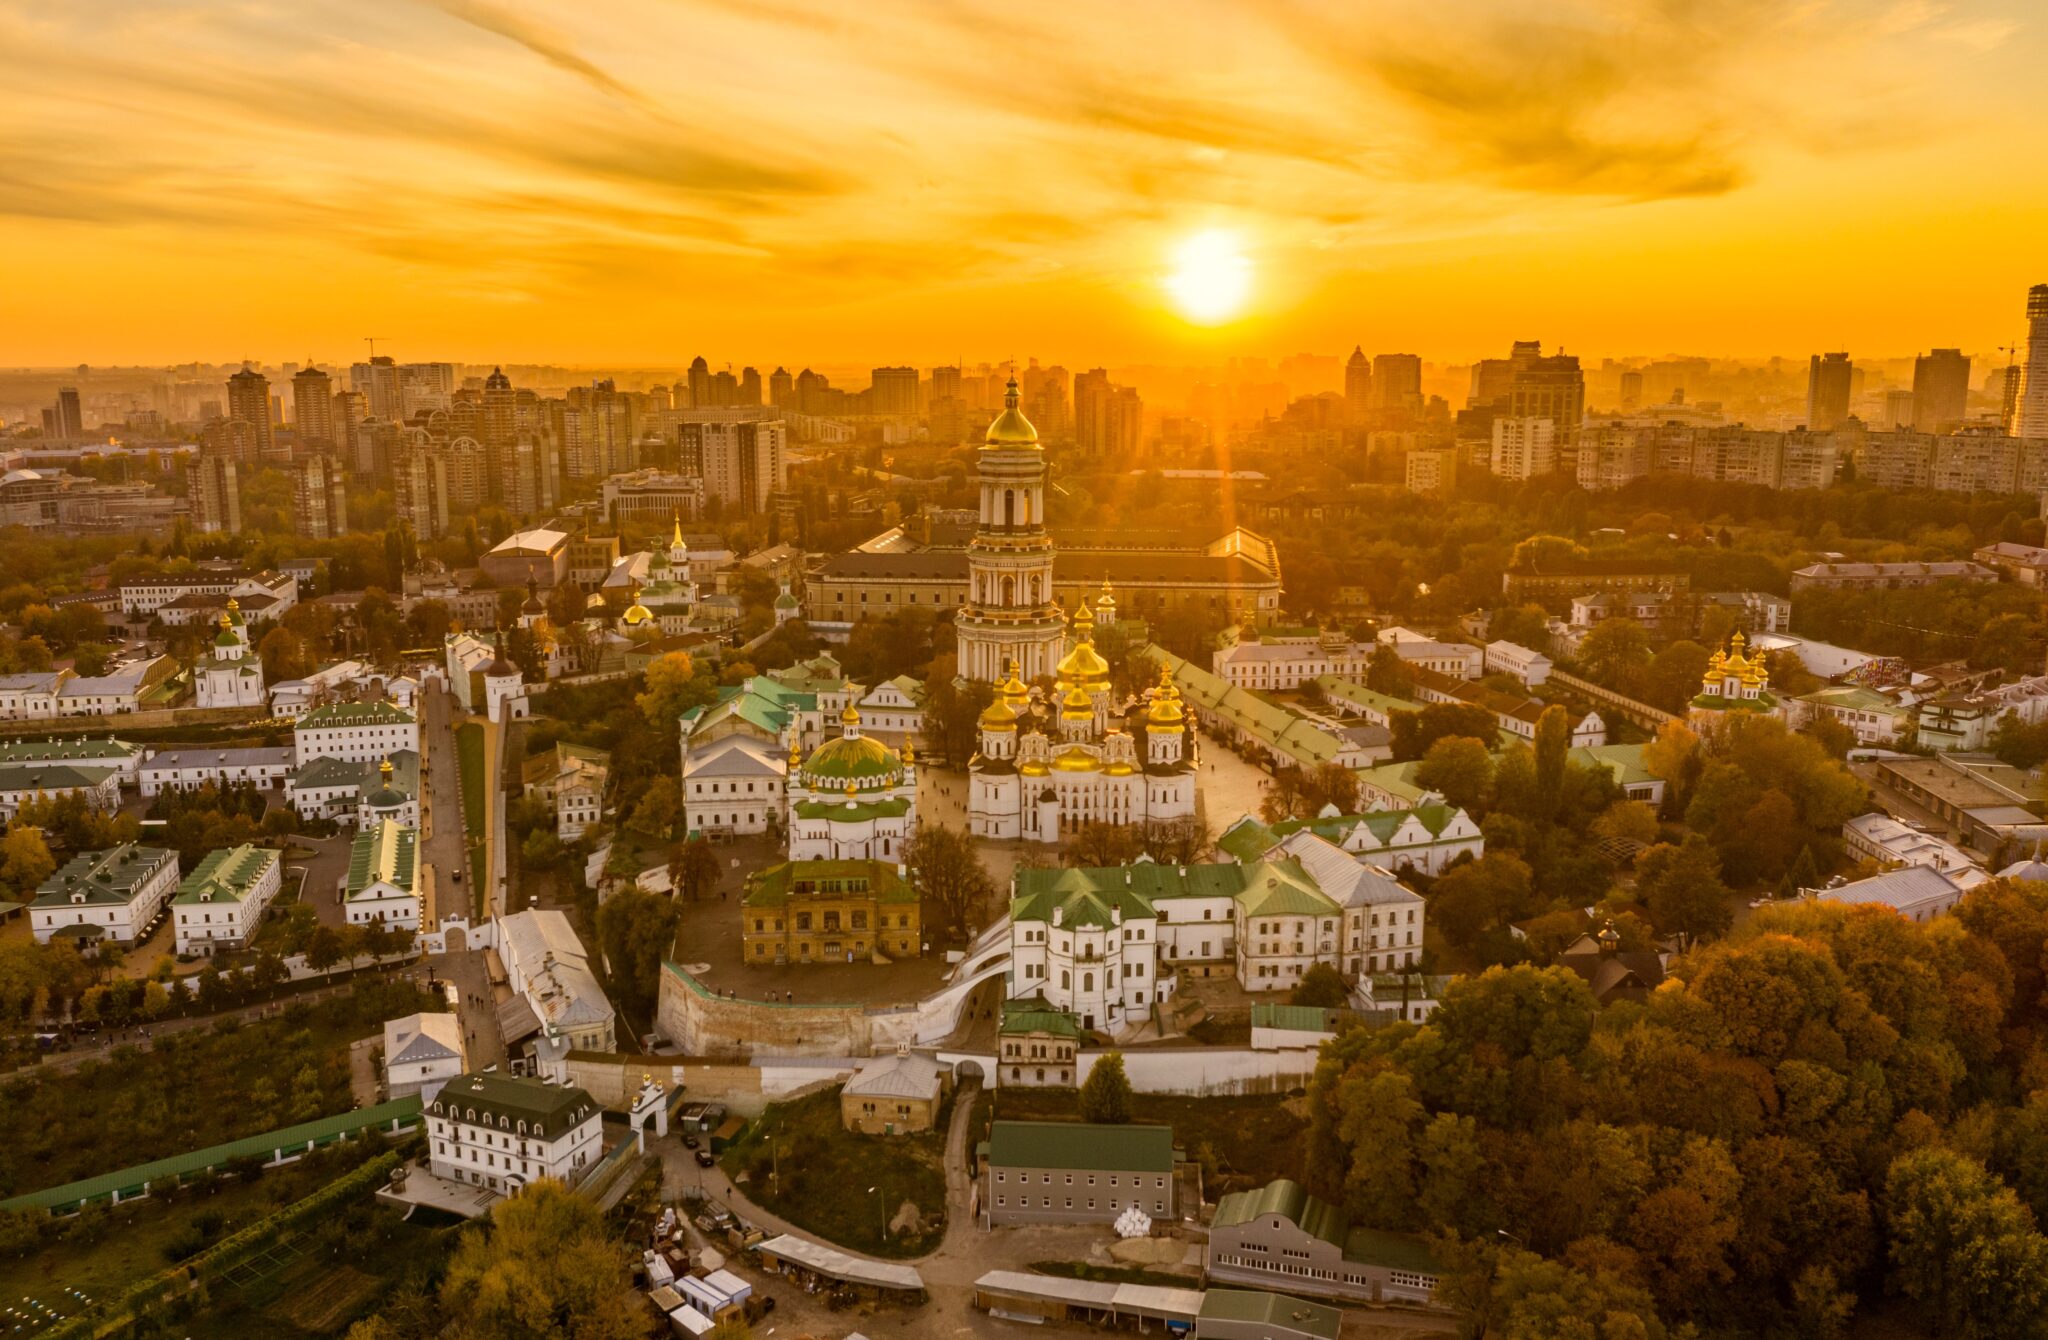 Stadtpanorama Kyjiv im goldenen Sonnenauf- oder -untergang mit Stadtpanorama im Hintergrund.